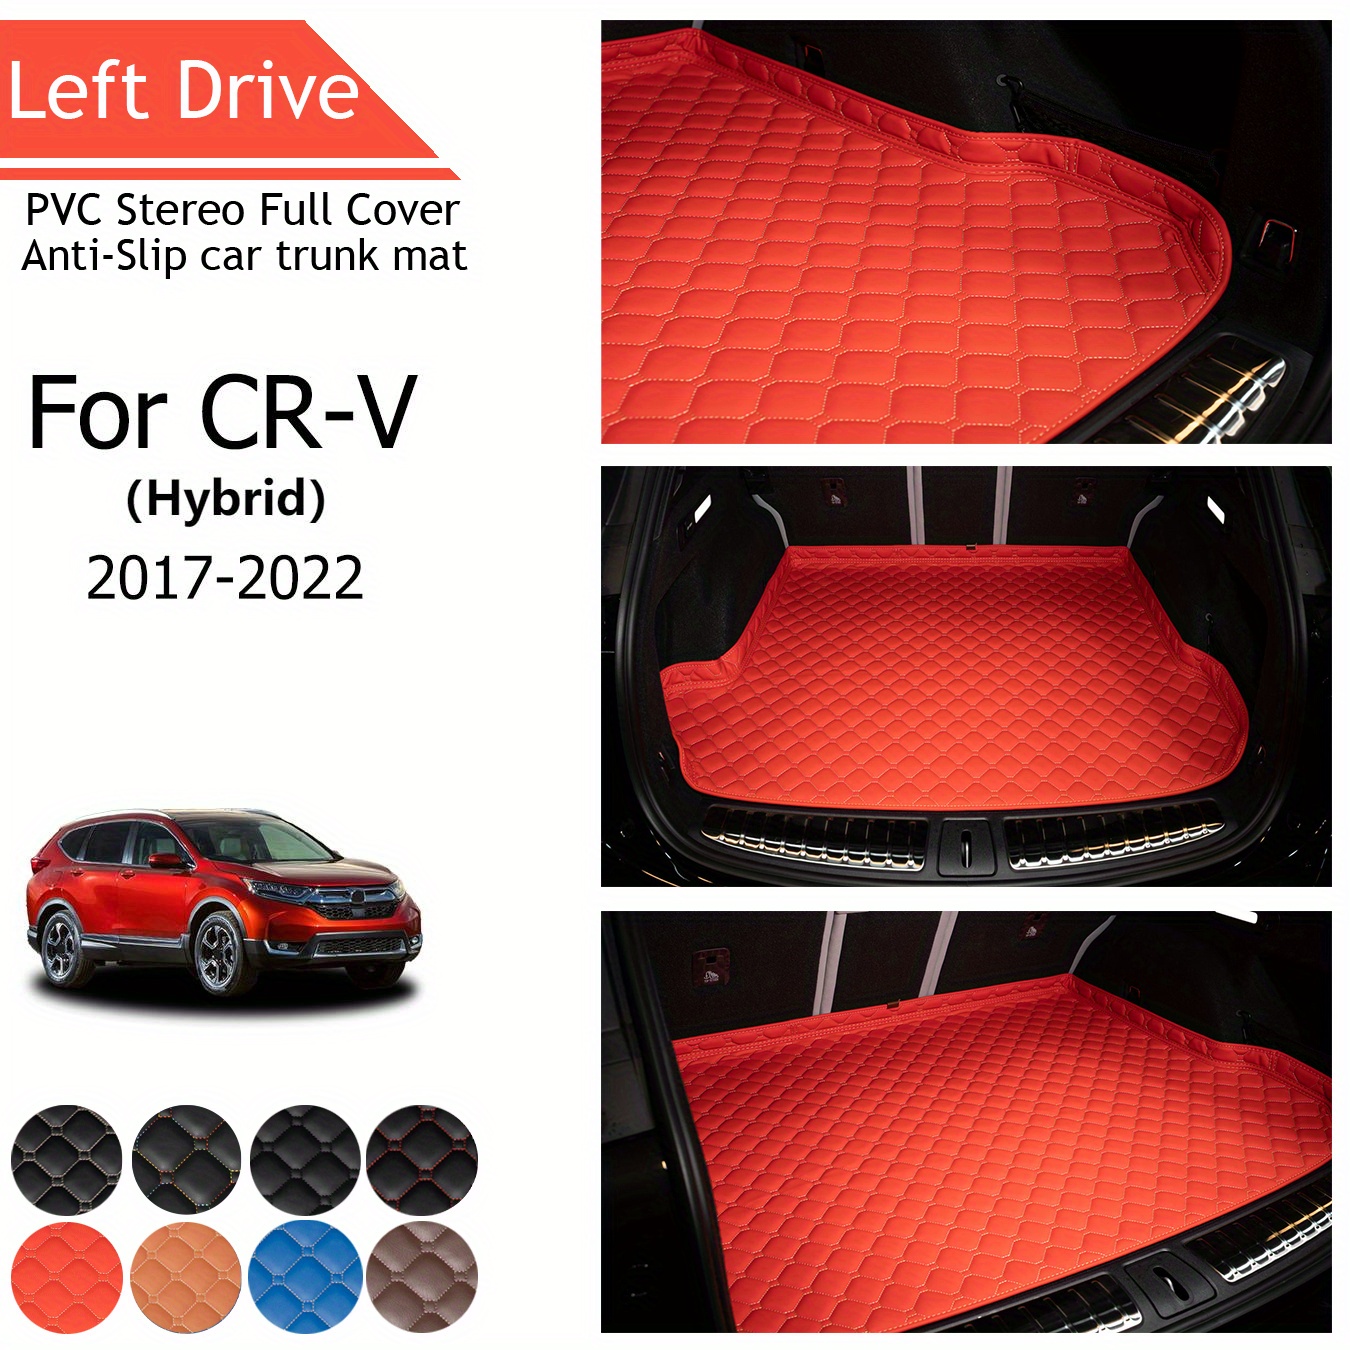 

Tegart [lhd] For Cr-v (hybrid) For 2017-2022 3 Layer Pvc Stereo Full Cover Anti-slip Car Trunk Mat